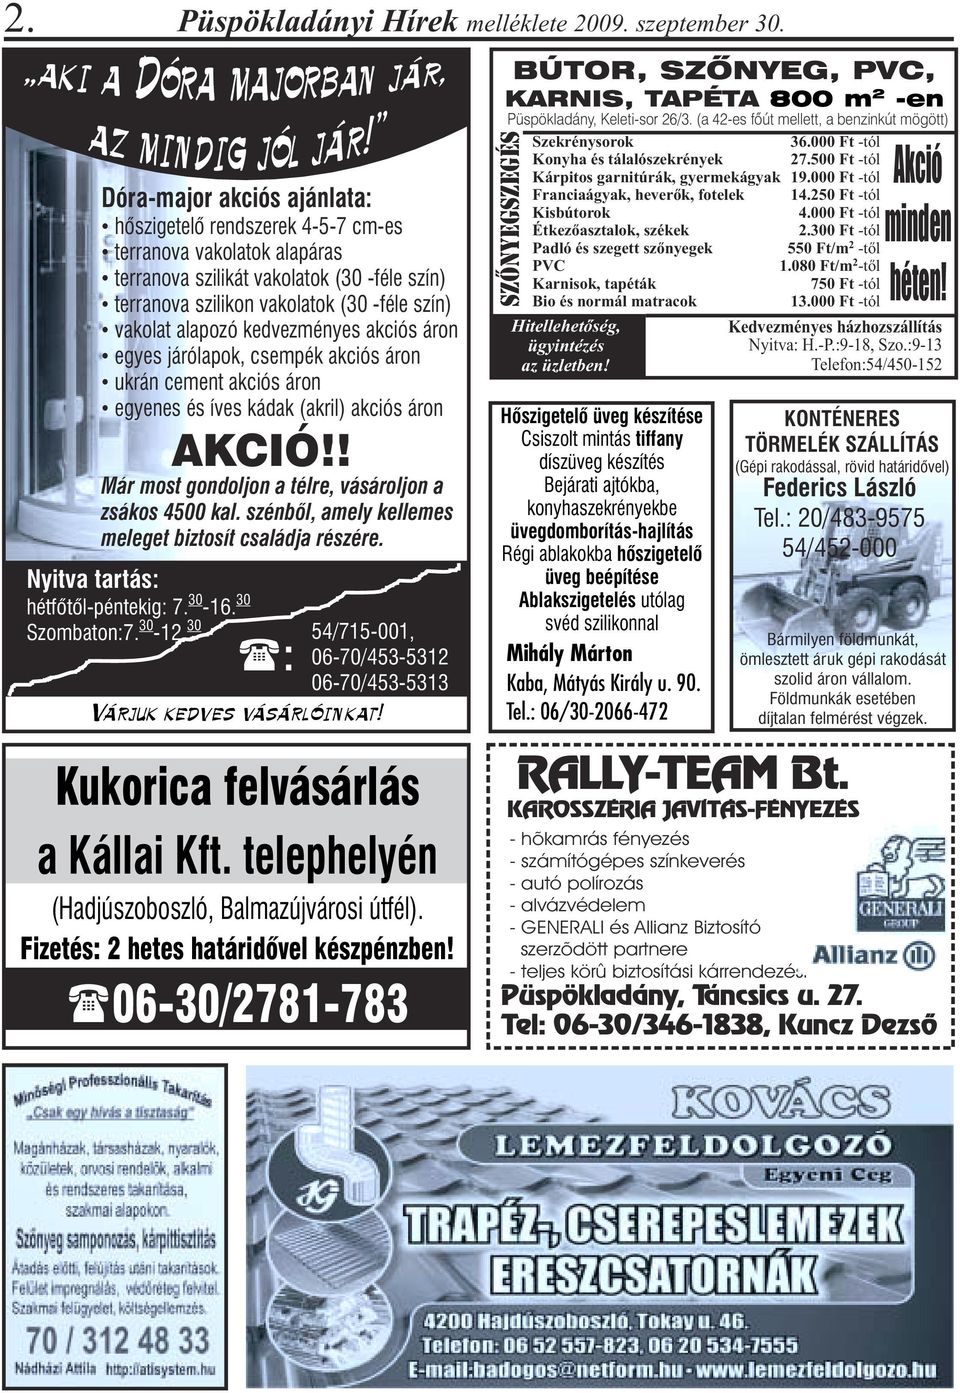 vakolat alapozó kedvezményes akciós áron egyes járólapok, csempék akciós áron ukrán cement akciós áron egyenes és íves kádak (akril) akciós áron Már most gondoljon a télre, vásároljon a zsákos 4500